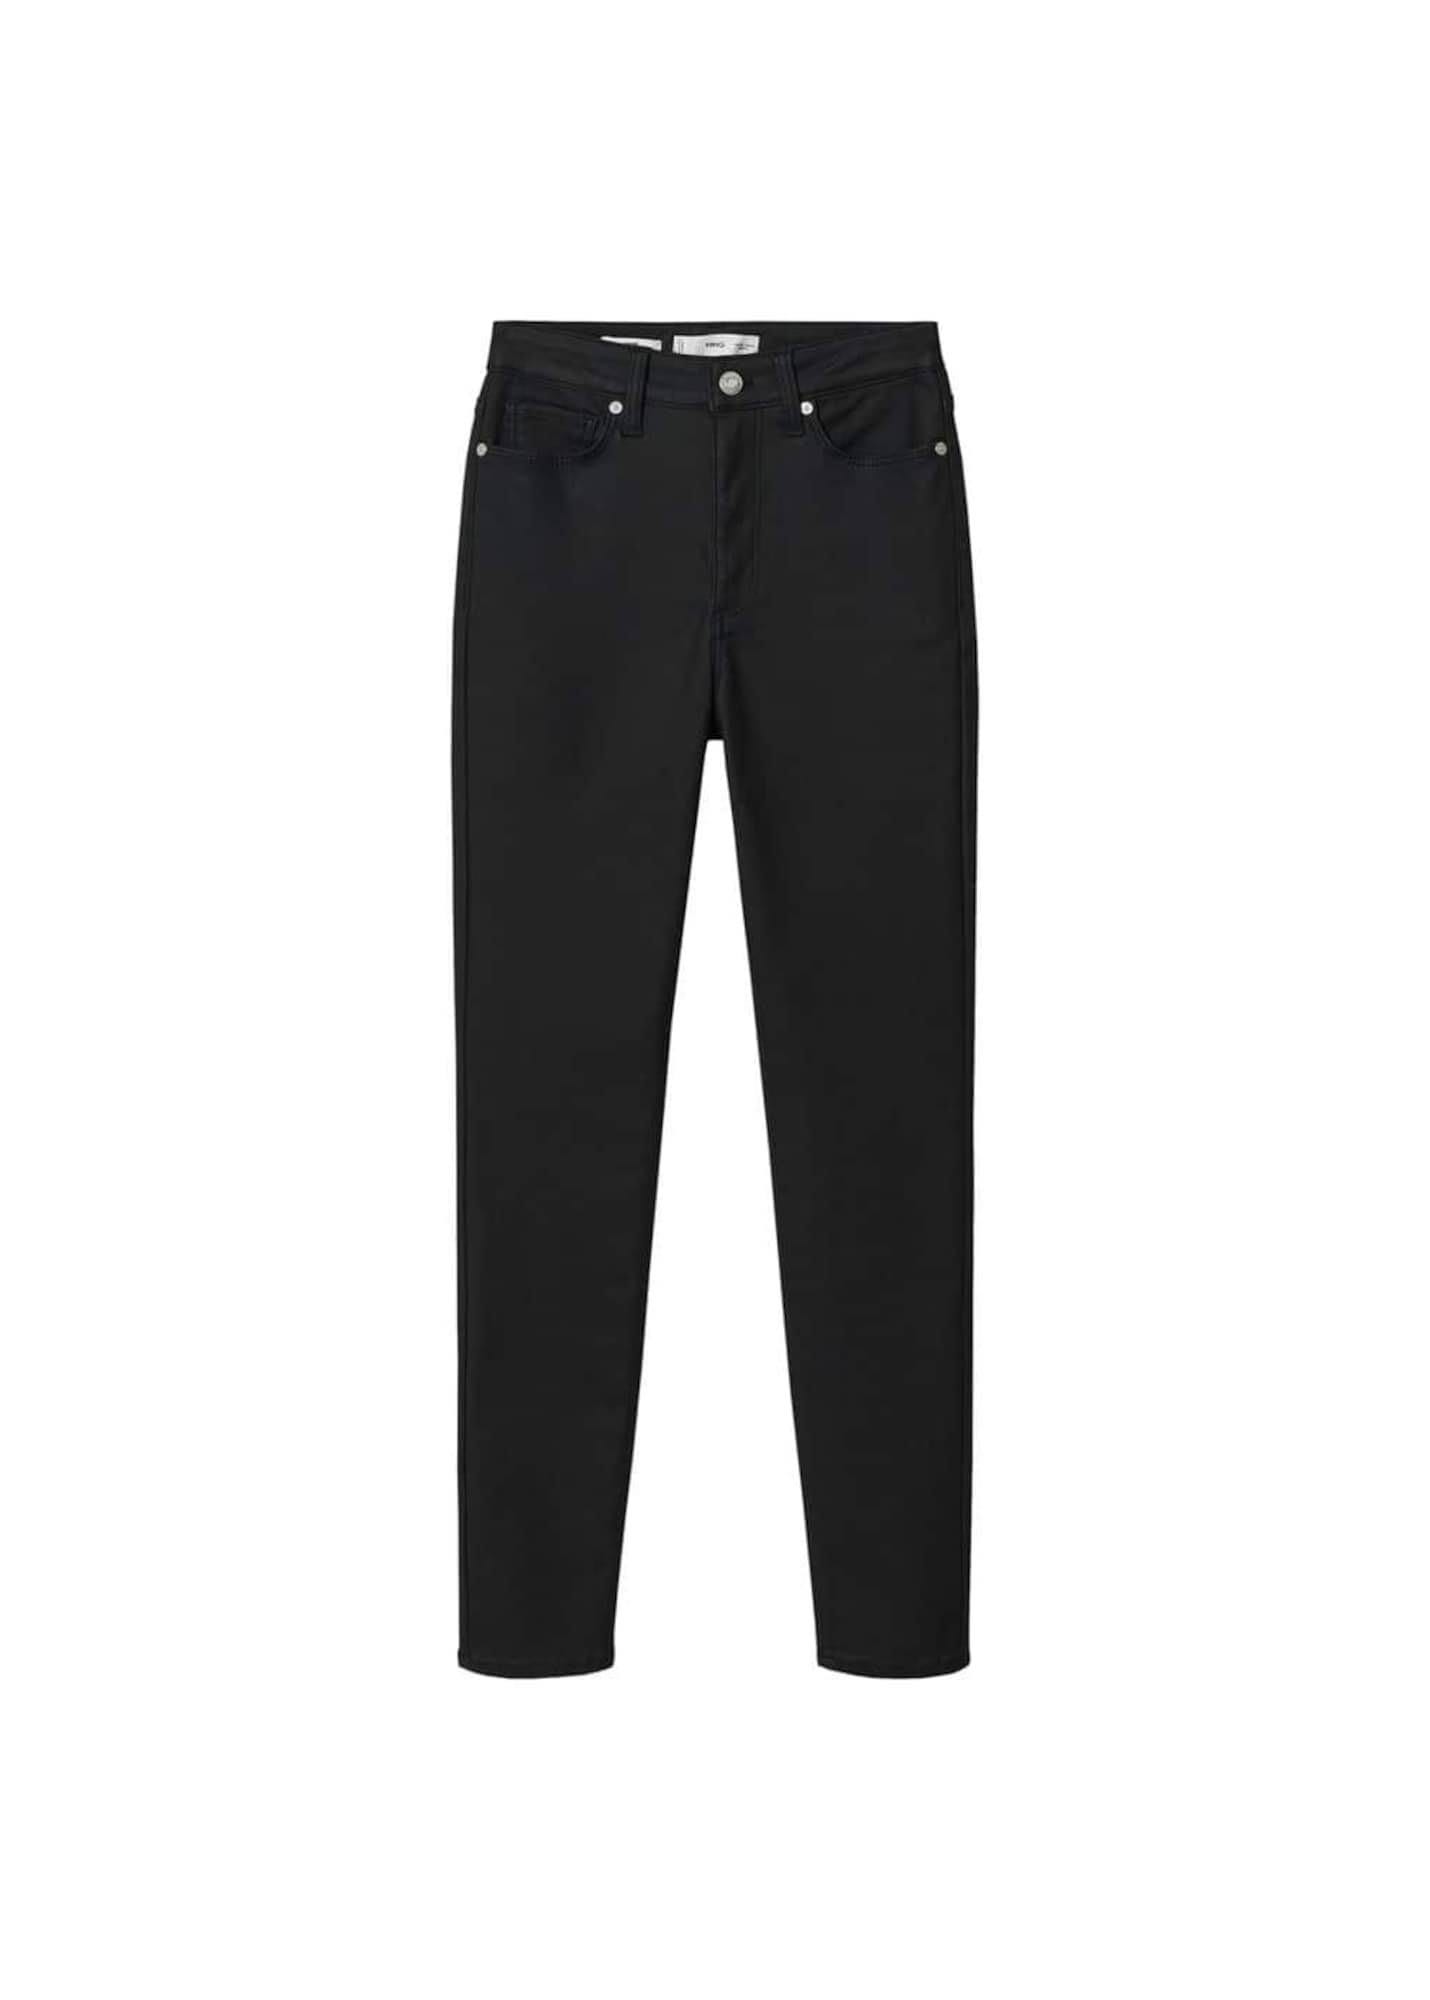 Stylish Black Mango Coated Skinny Jeans | Image